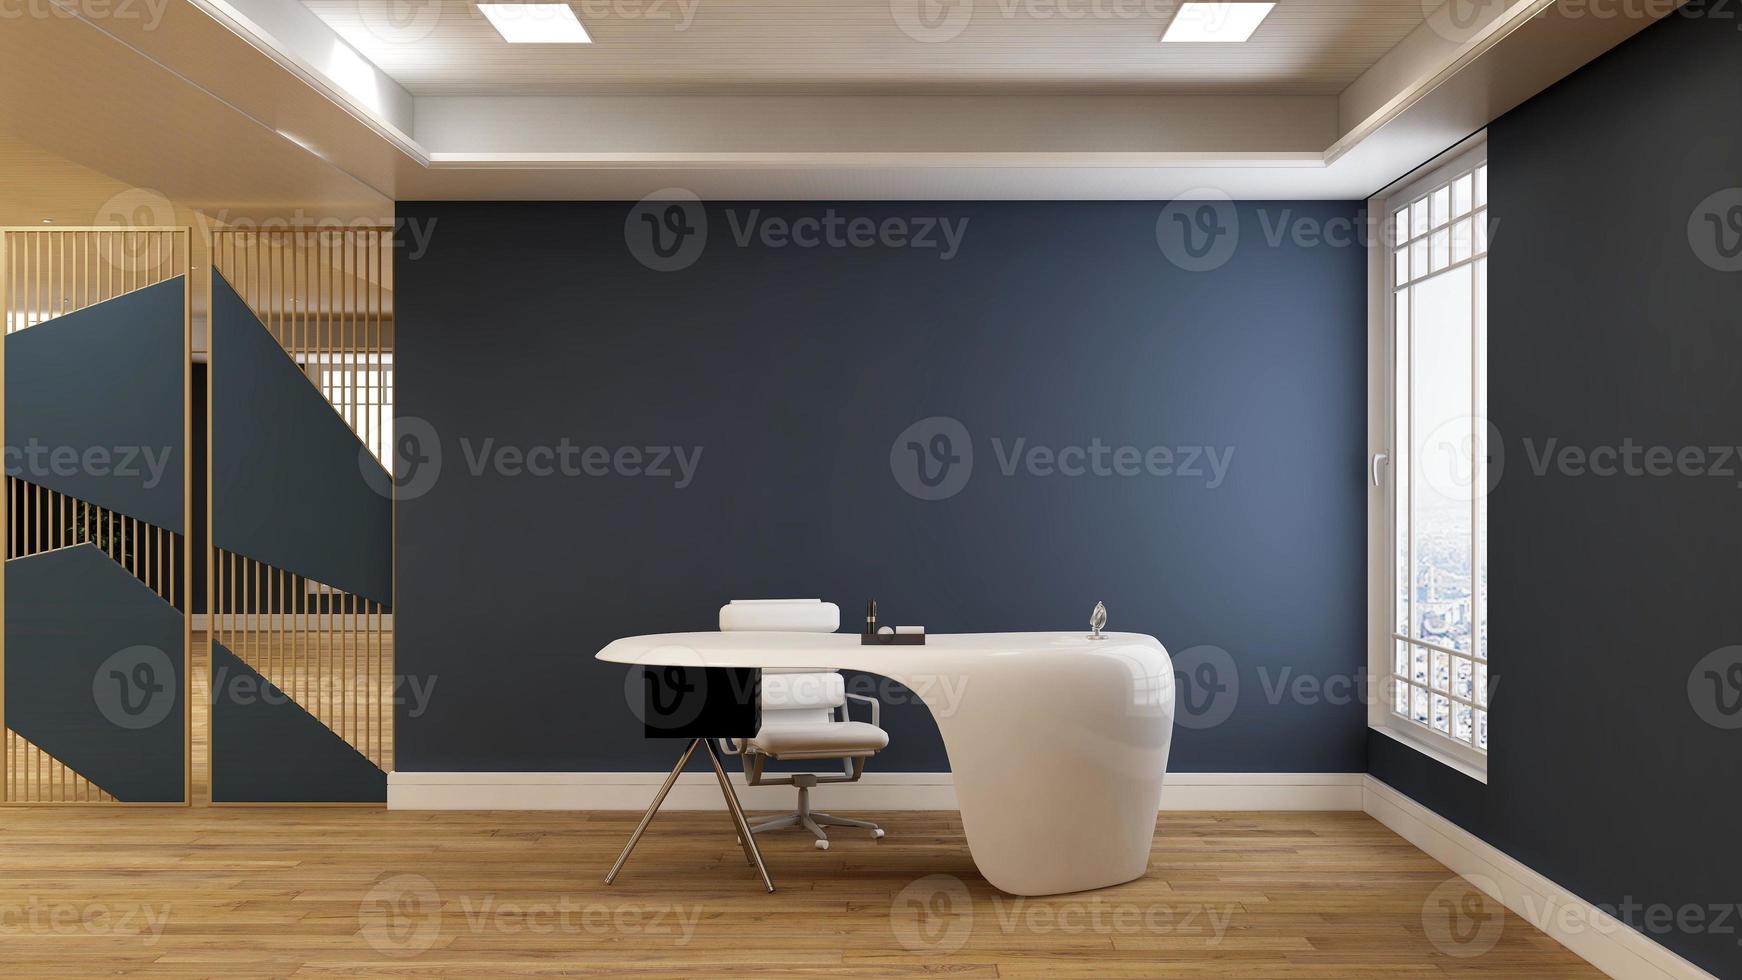 Salle de gestion de bureau d'affaires moderne de rendu 3d avec intérieur de conception 3d pour maquette de logo de mur d'entreprise photo